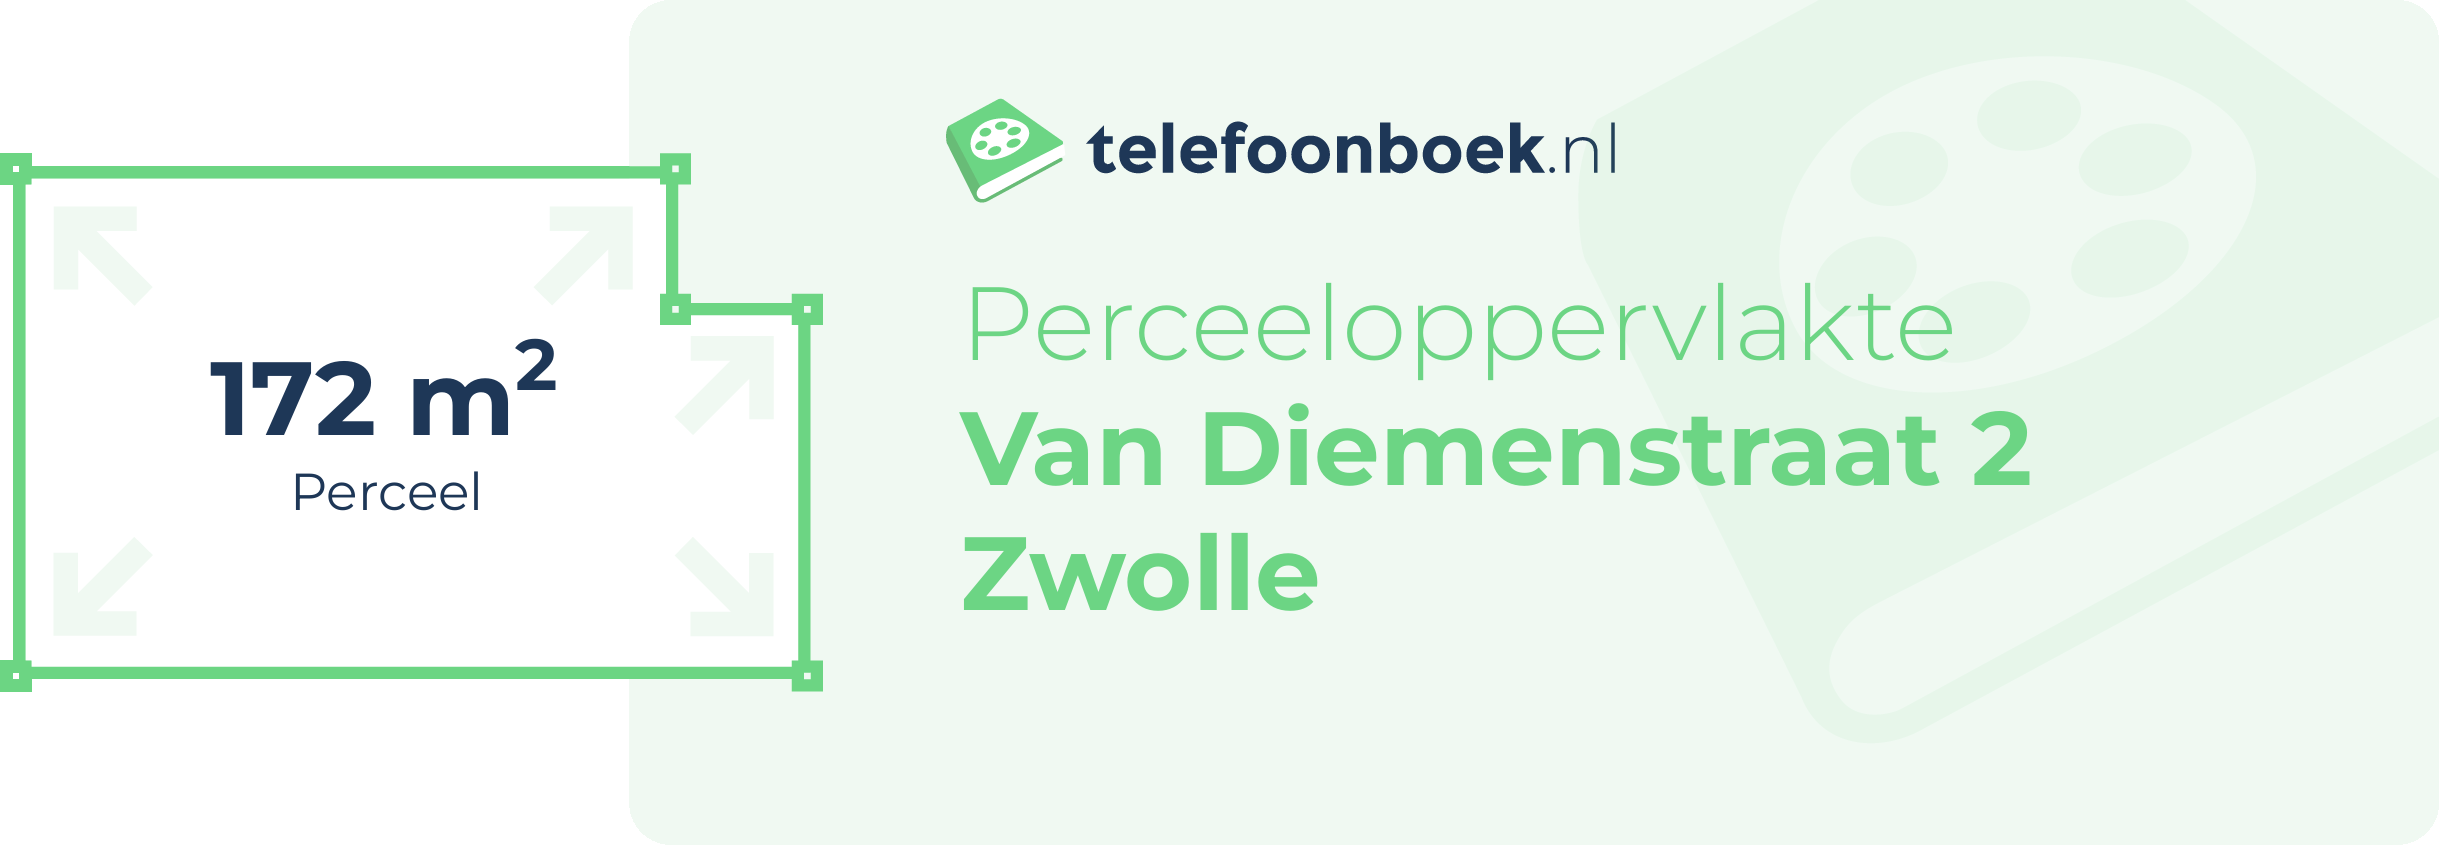 Perceeloppervlakte Van Diemenstraat 2 Zwolle